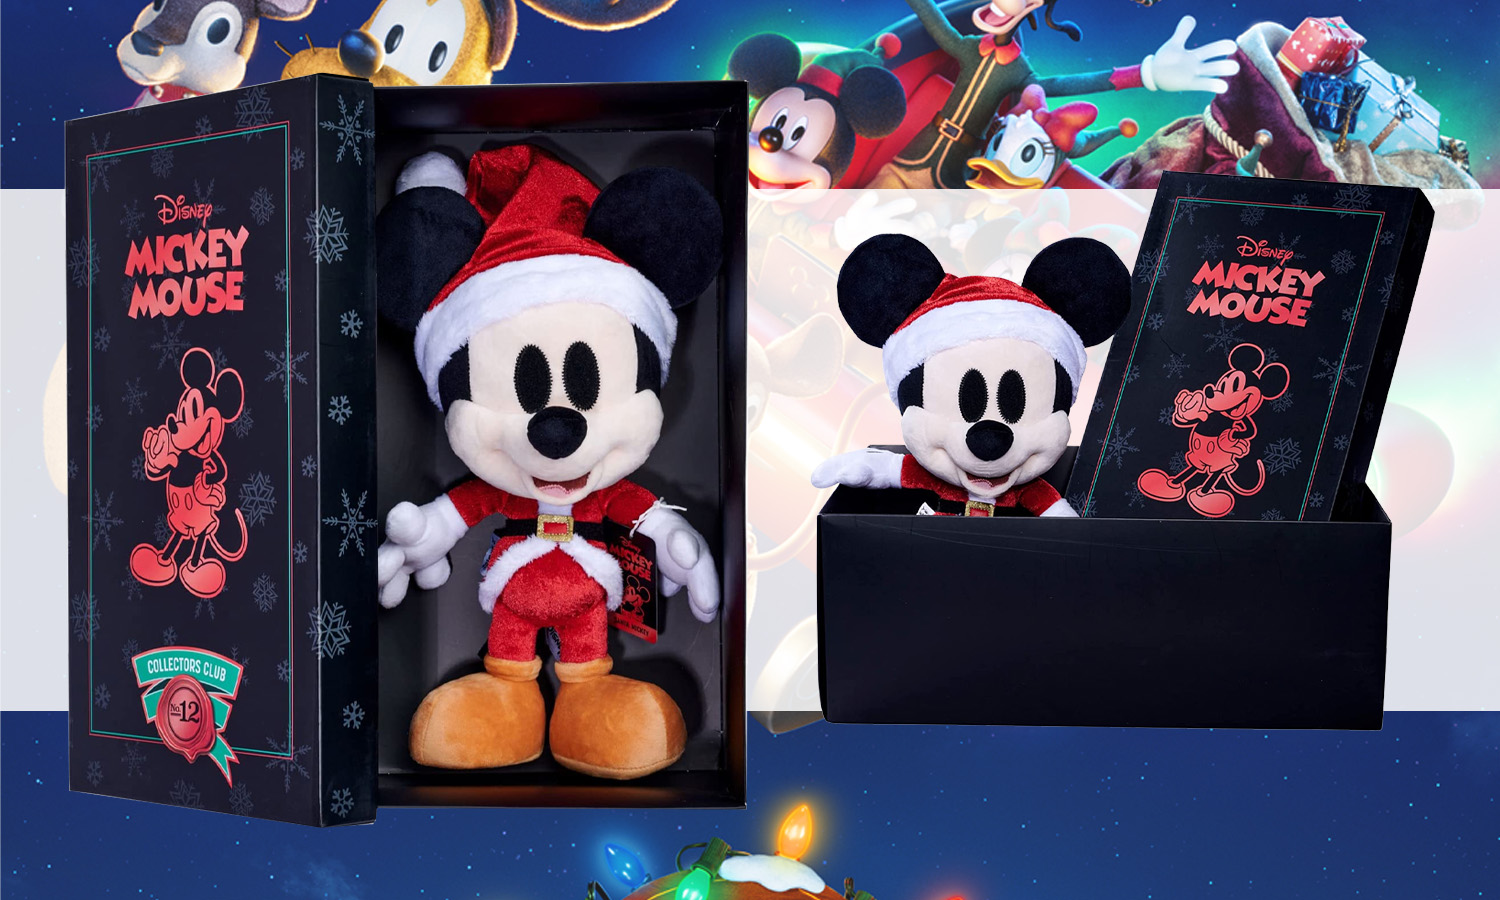 Peluche de Noël 'Mickey